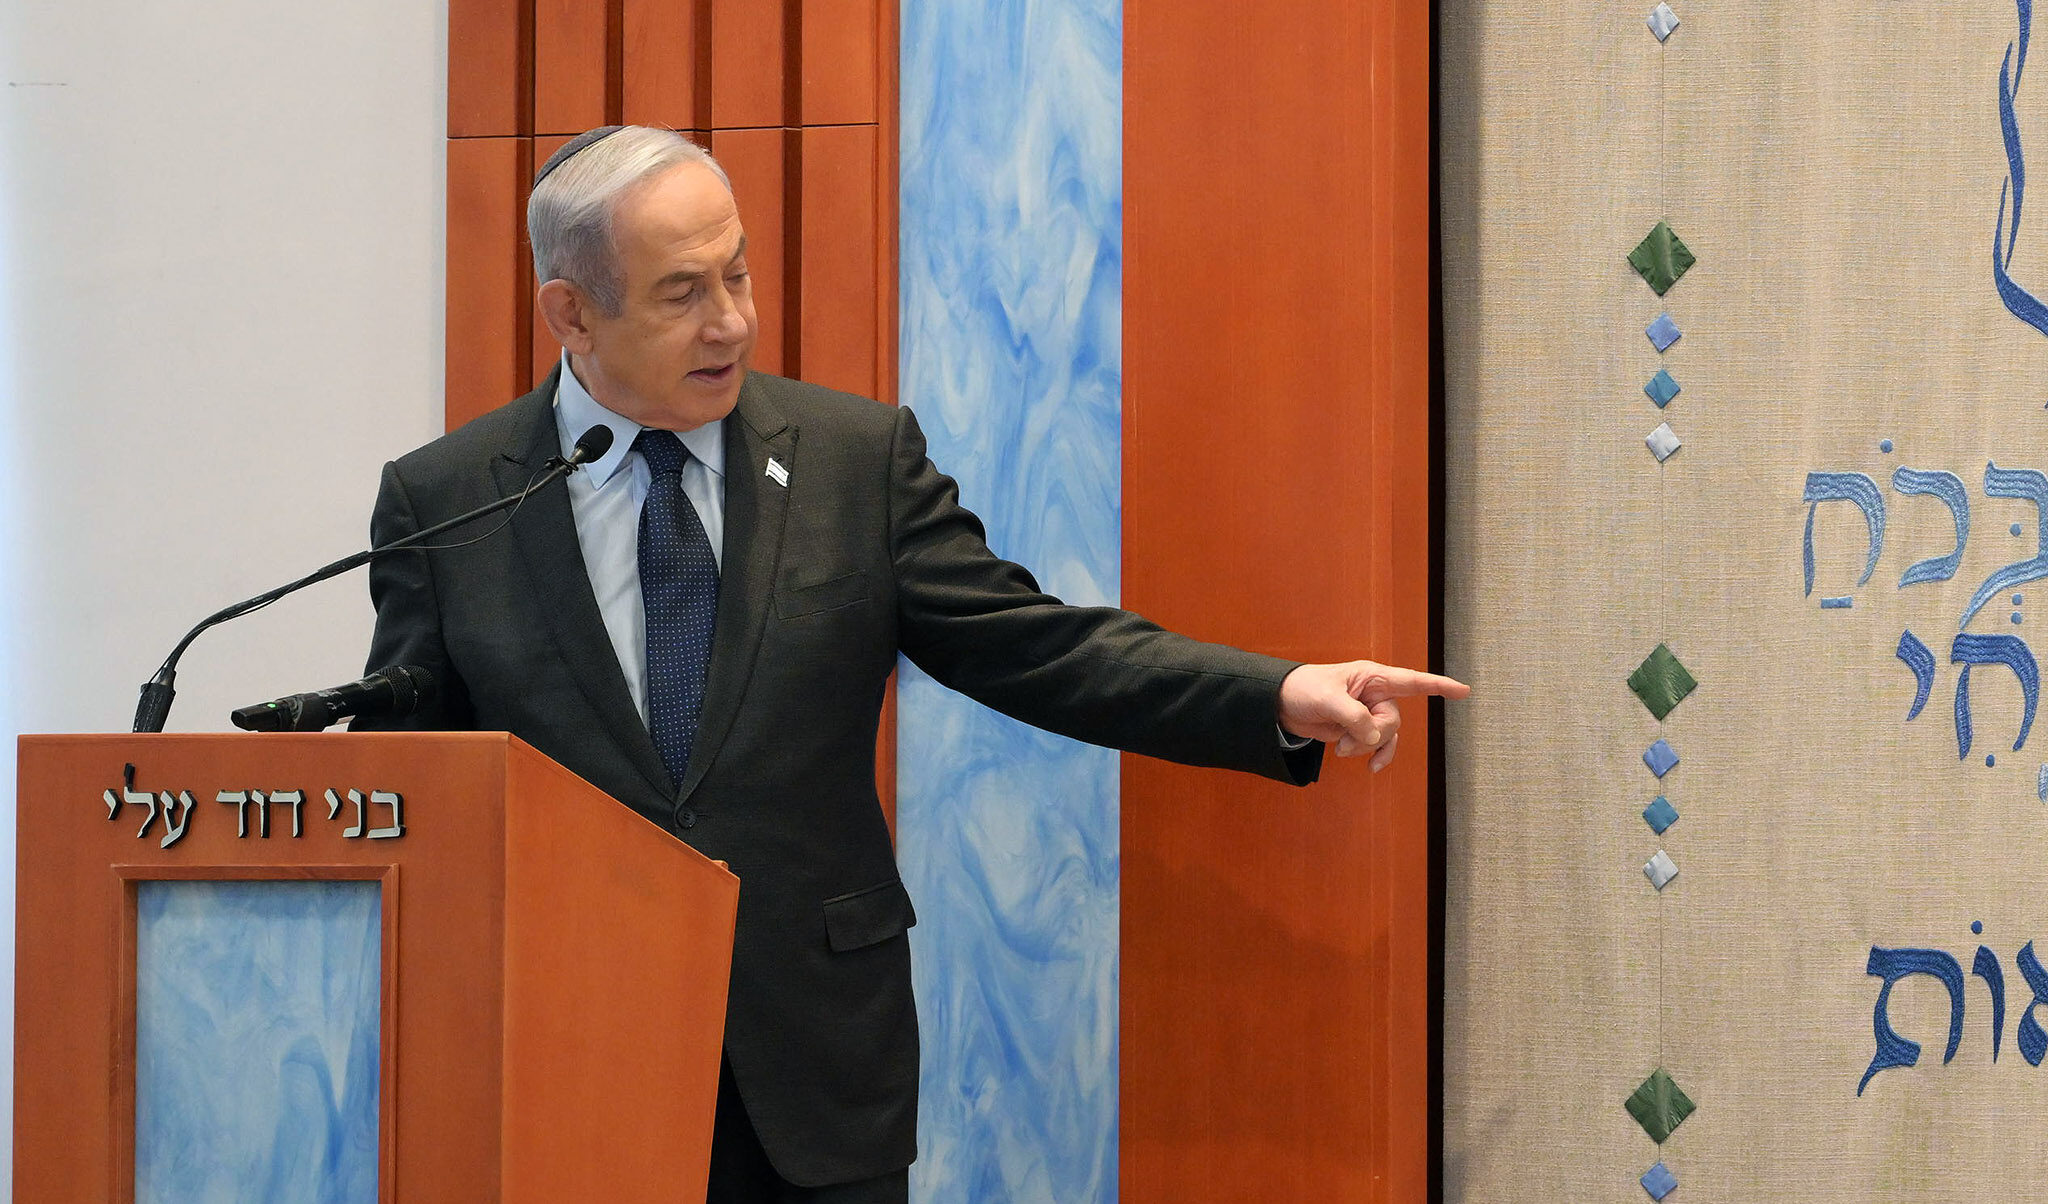 Netanyahu annulla gli incontri di Washington: "È un segnale per dire che non ci pieghiamo ad Hamas"